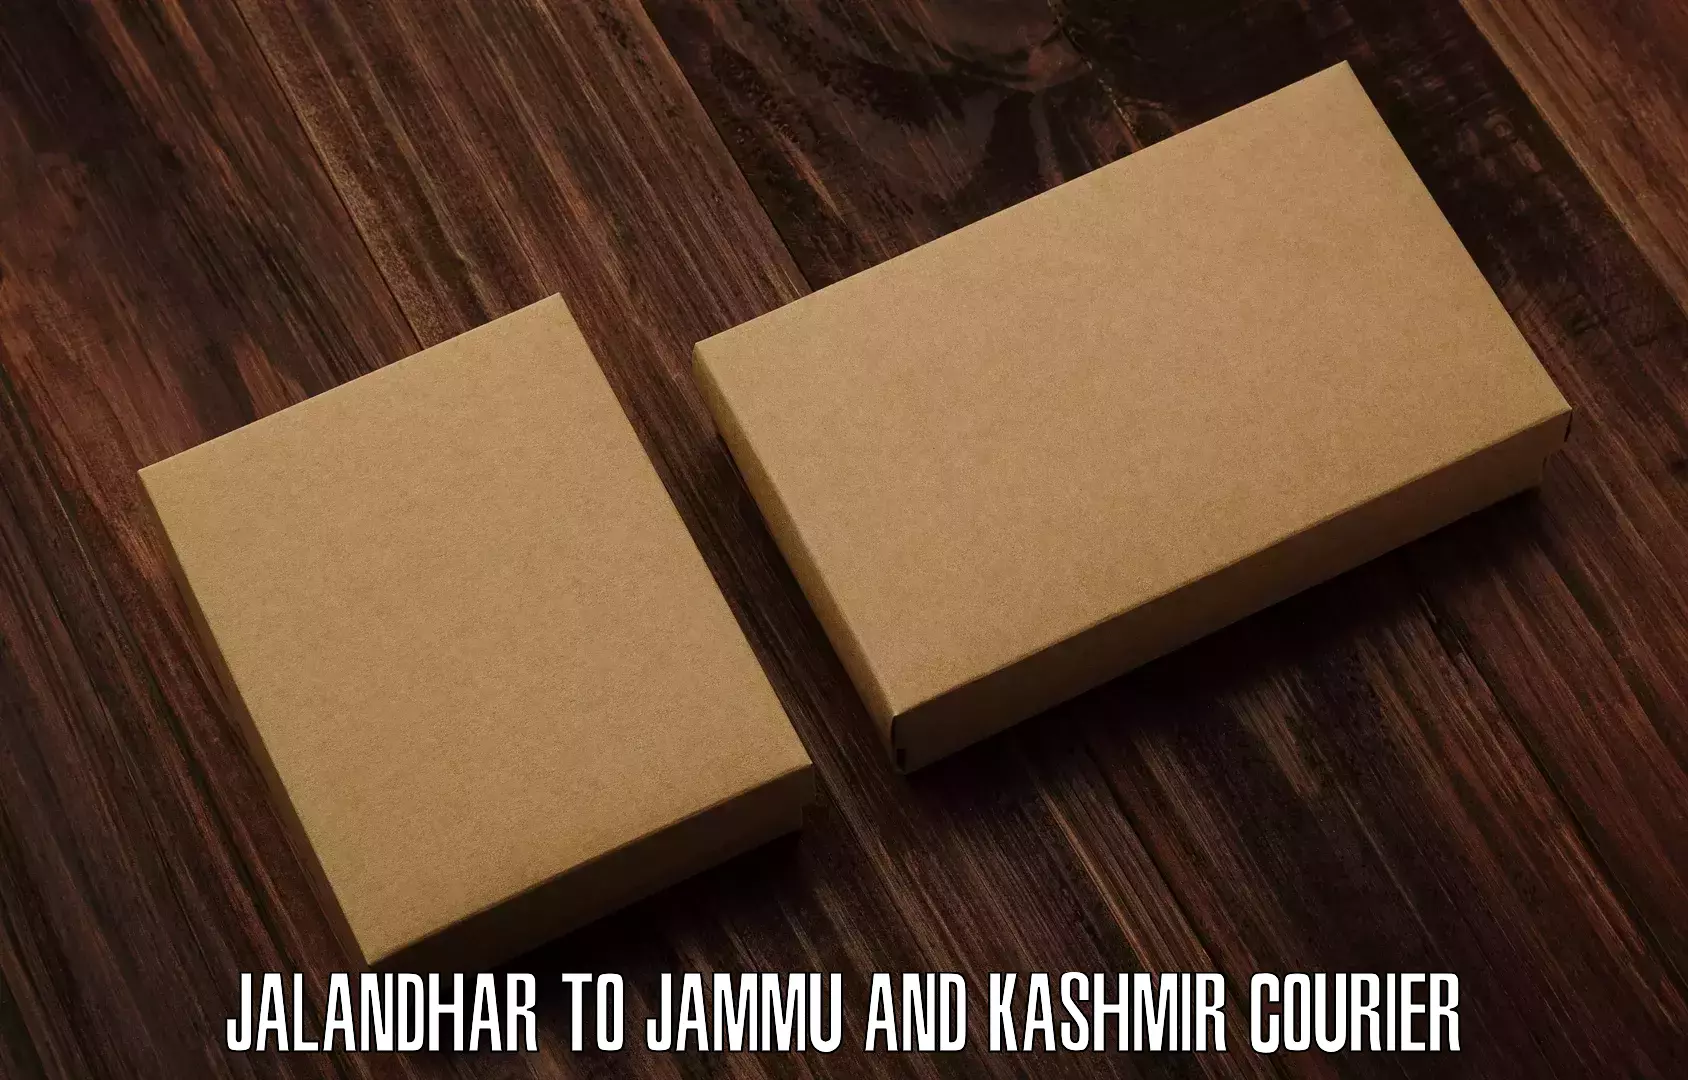 Express postal services Jalandhar to Jammu